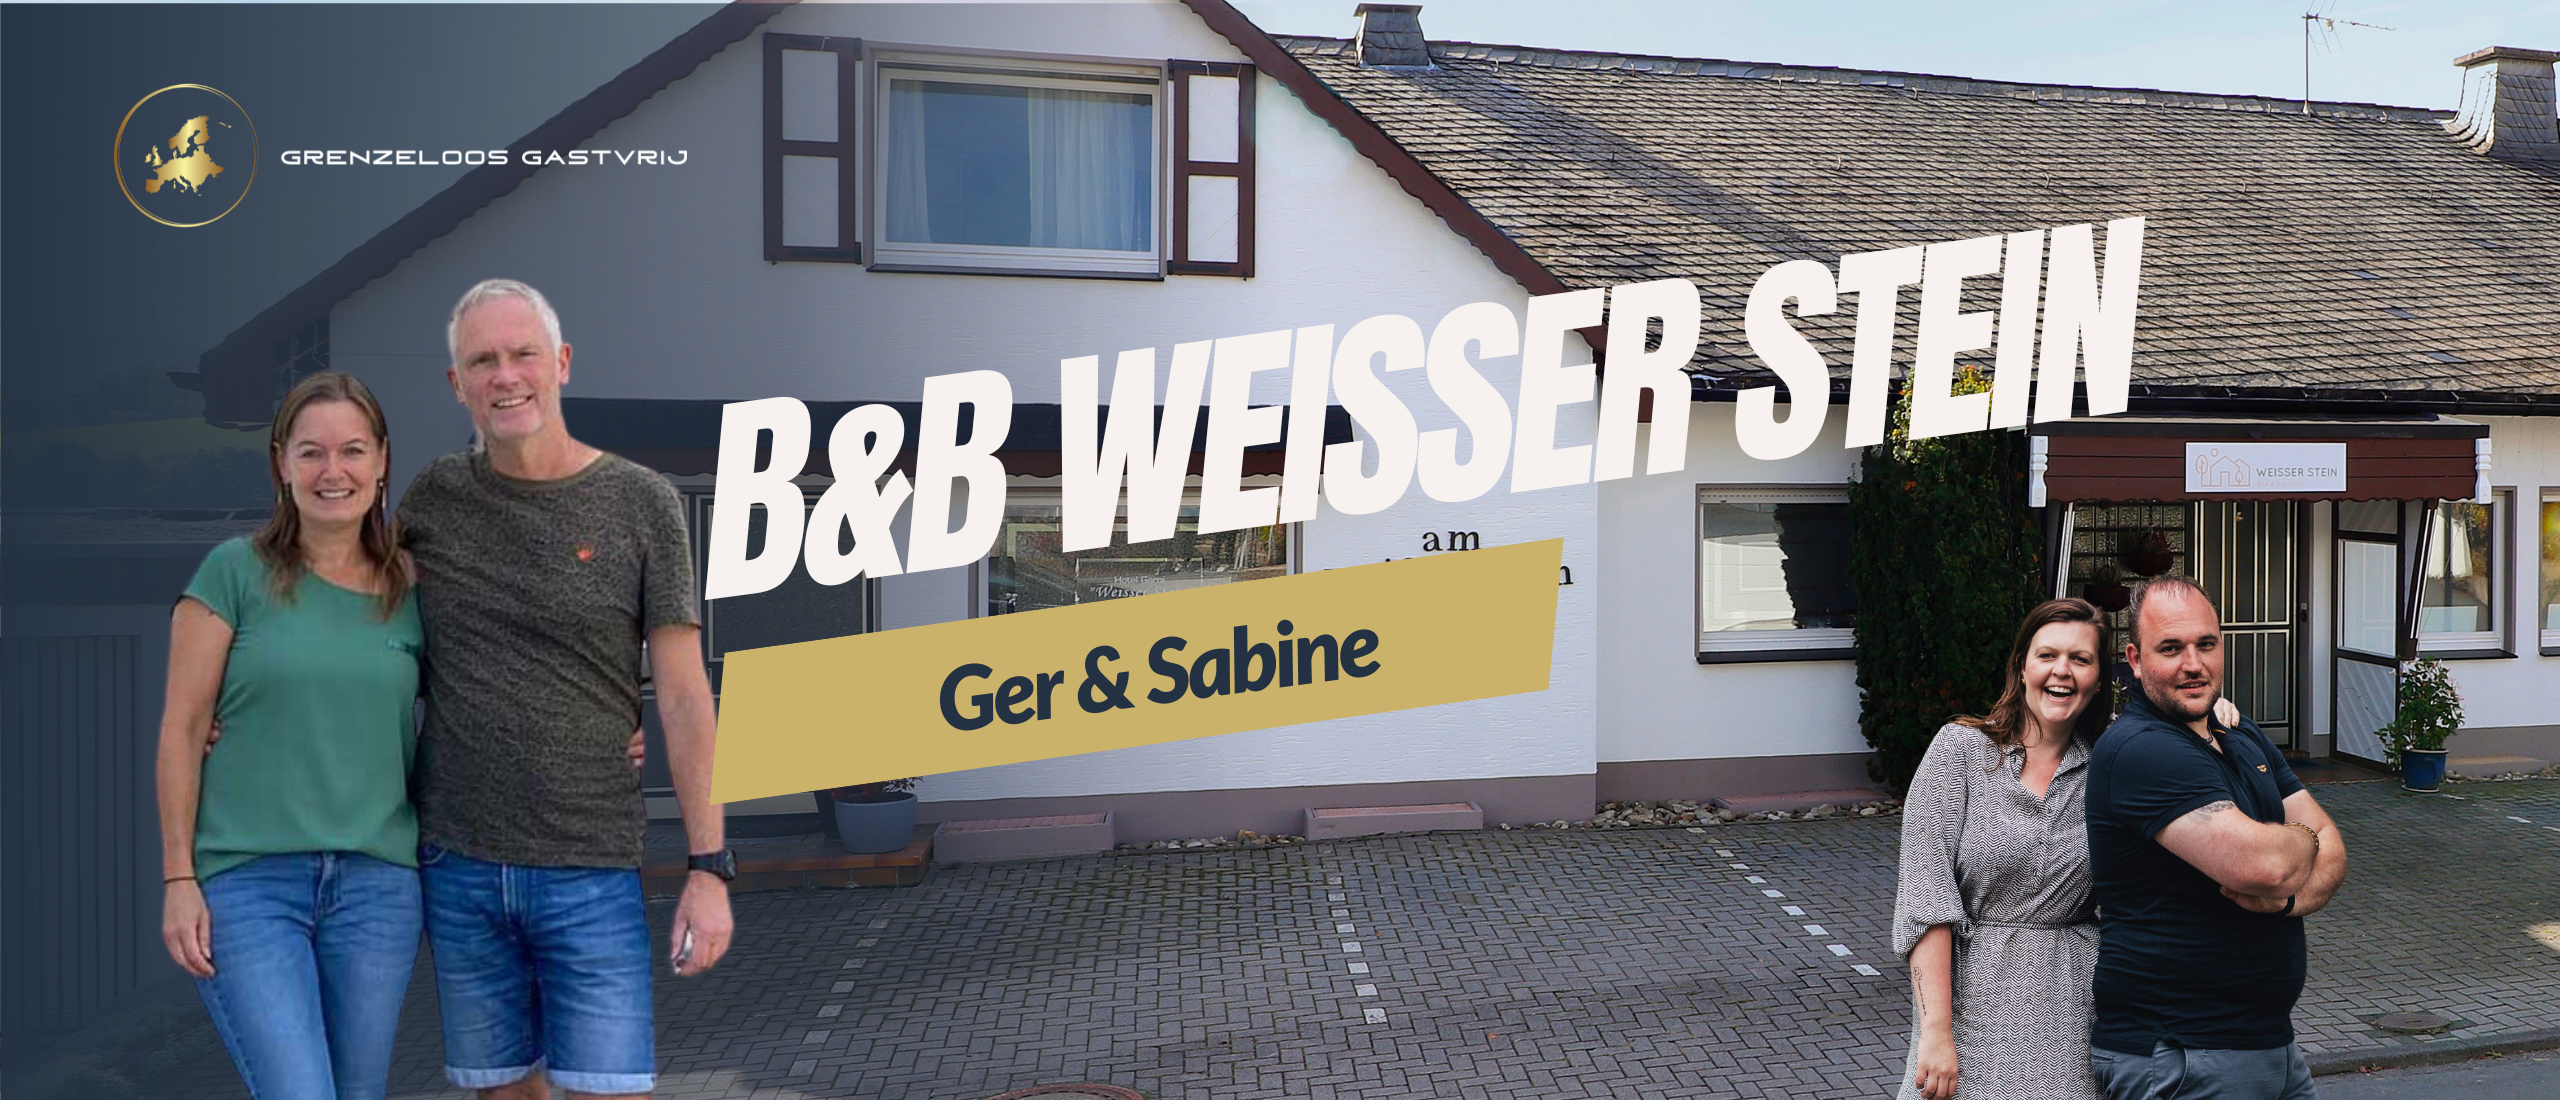 De ondernemersreis van Ger en Sabine - B&B Weisser Stein